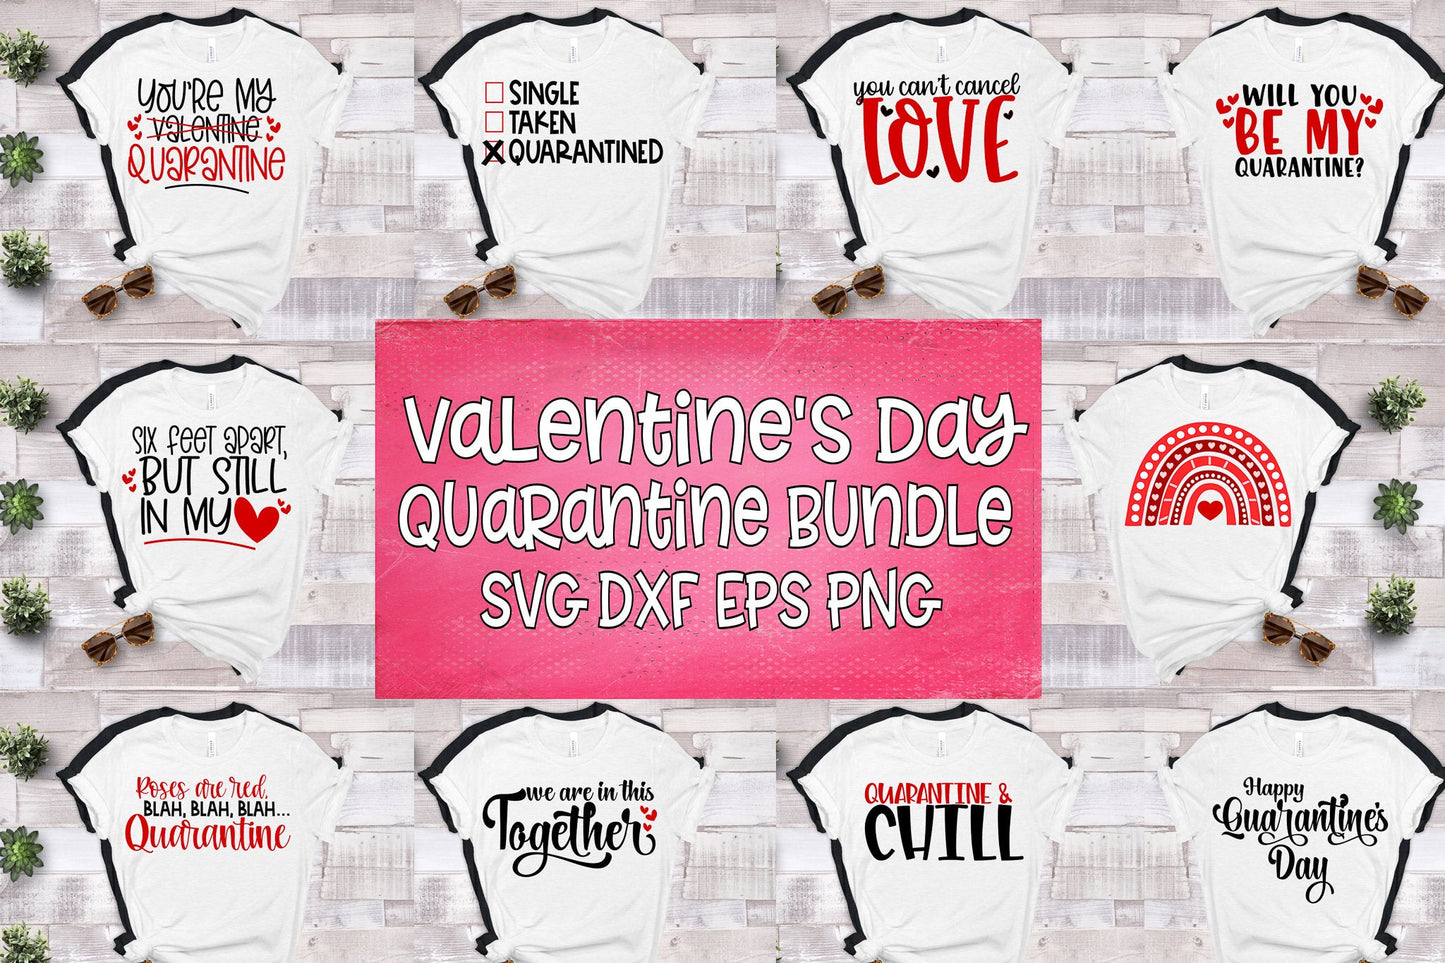 Valentine Quarantine Bundle svg dxf eps png. Will You Be my Quarantine SvG | Valentine&#39;s Day SvG | Quarantine SvG  Instant Download Cut File